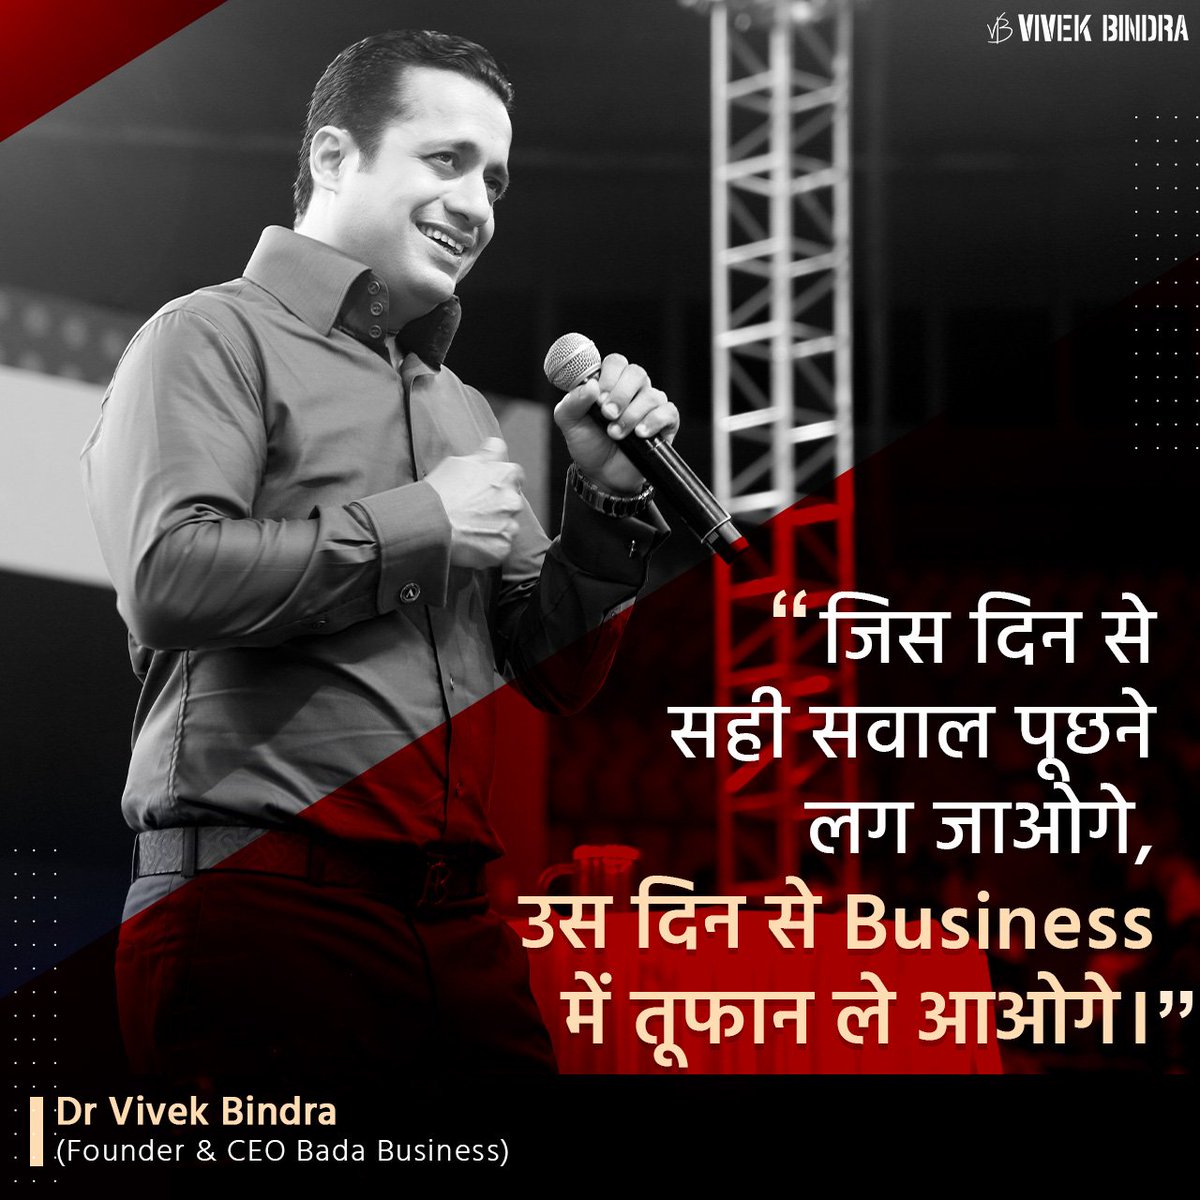 Business में सफलता के लिए सही समय पर सही सवाल पूछना जरूरी होता है। #VBQuote #Motivation #DrVivekBindra #Learning #DrVivekBindra